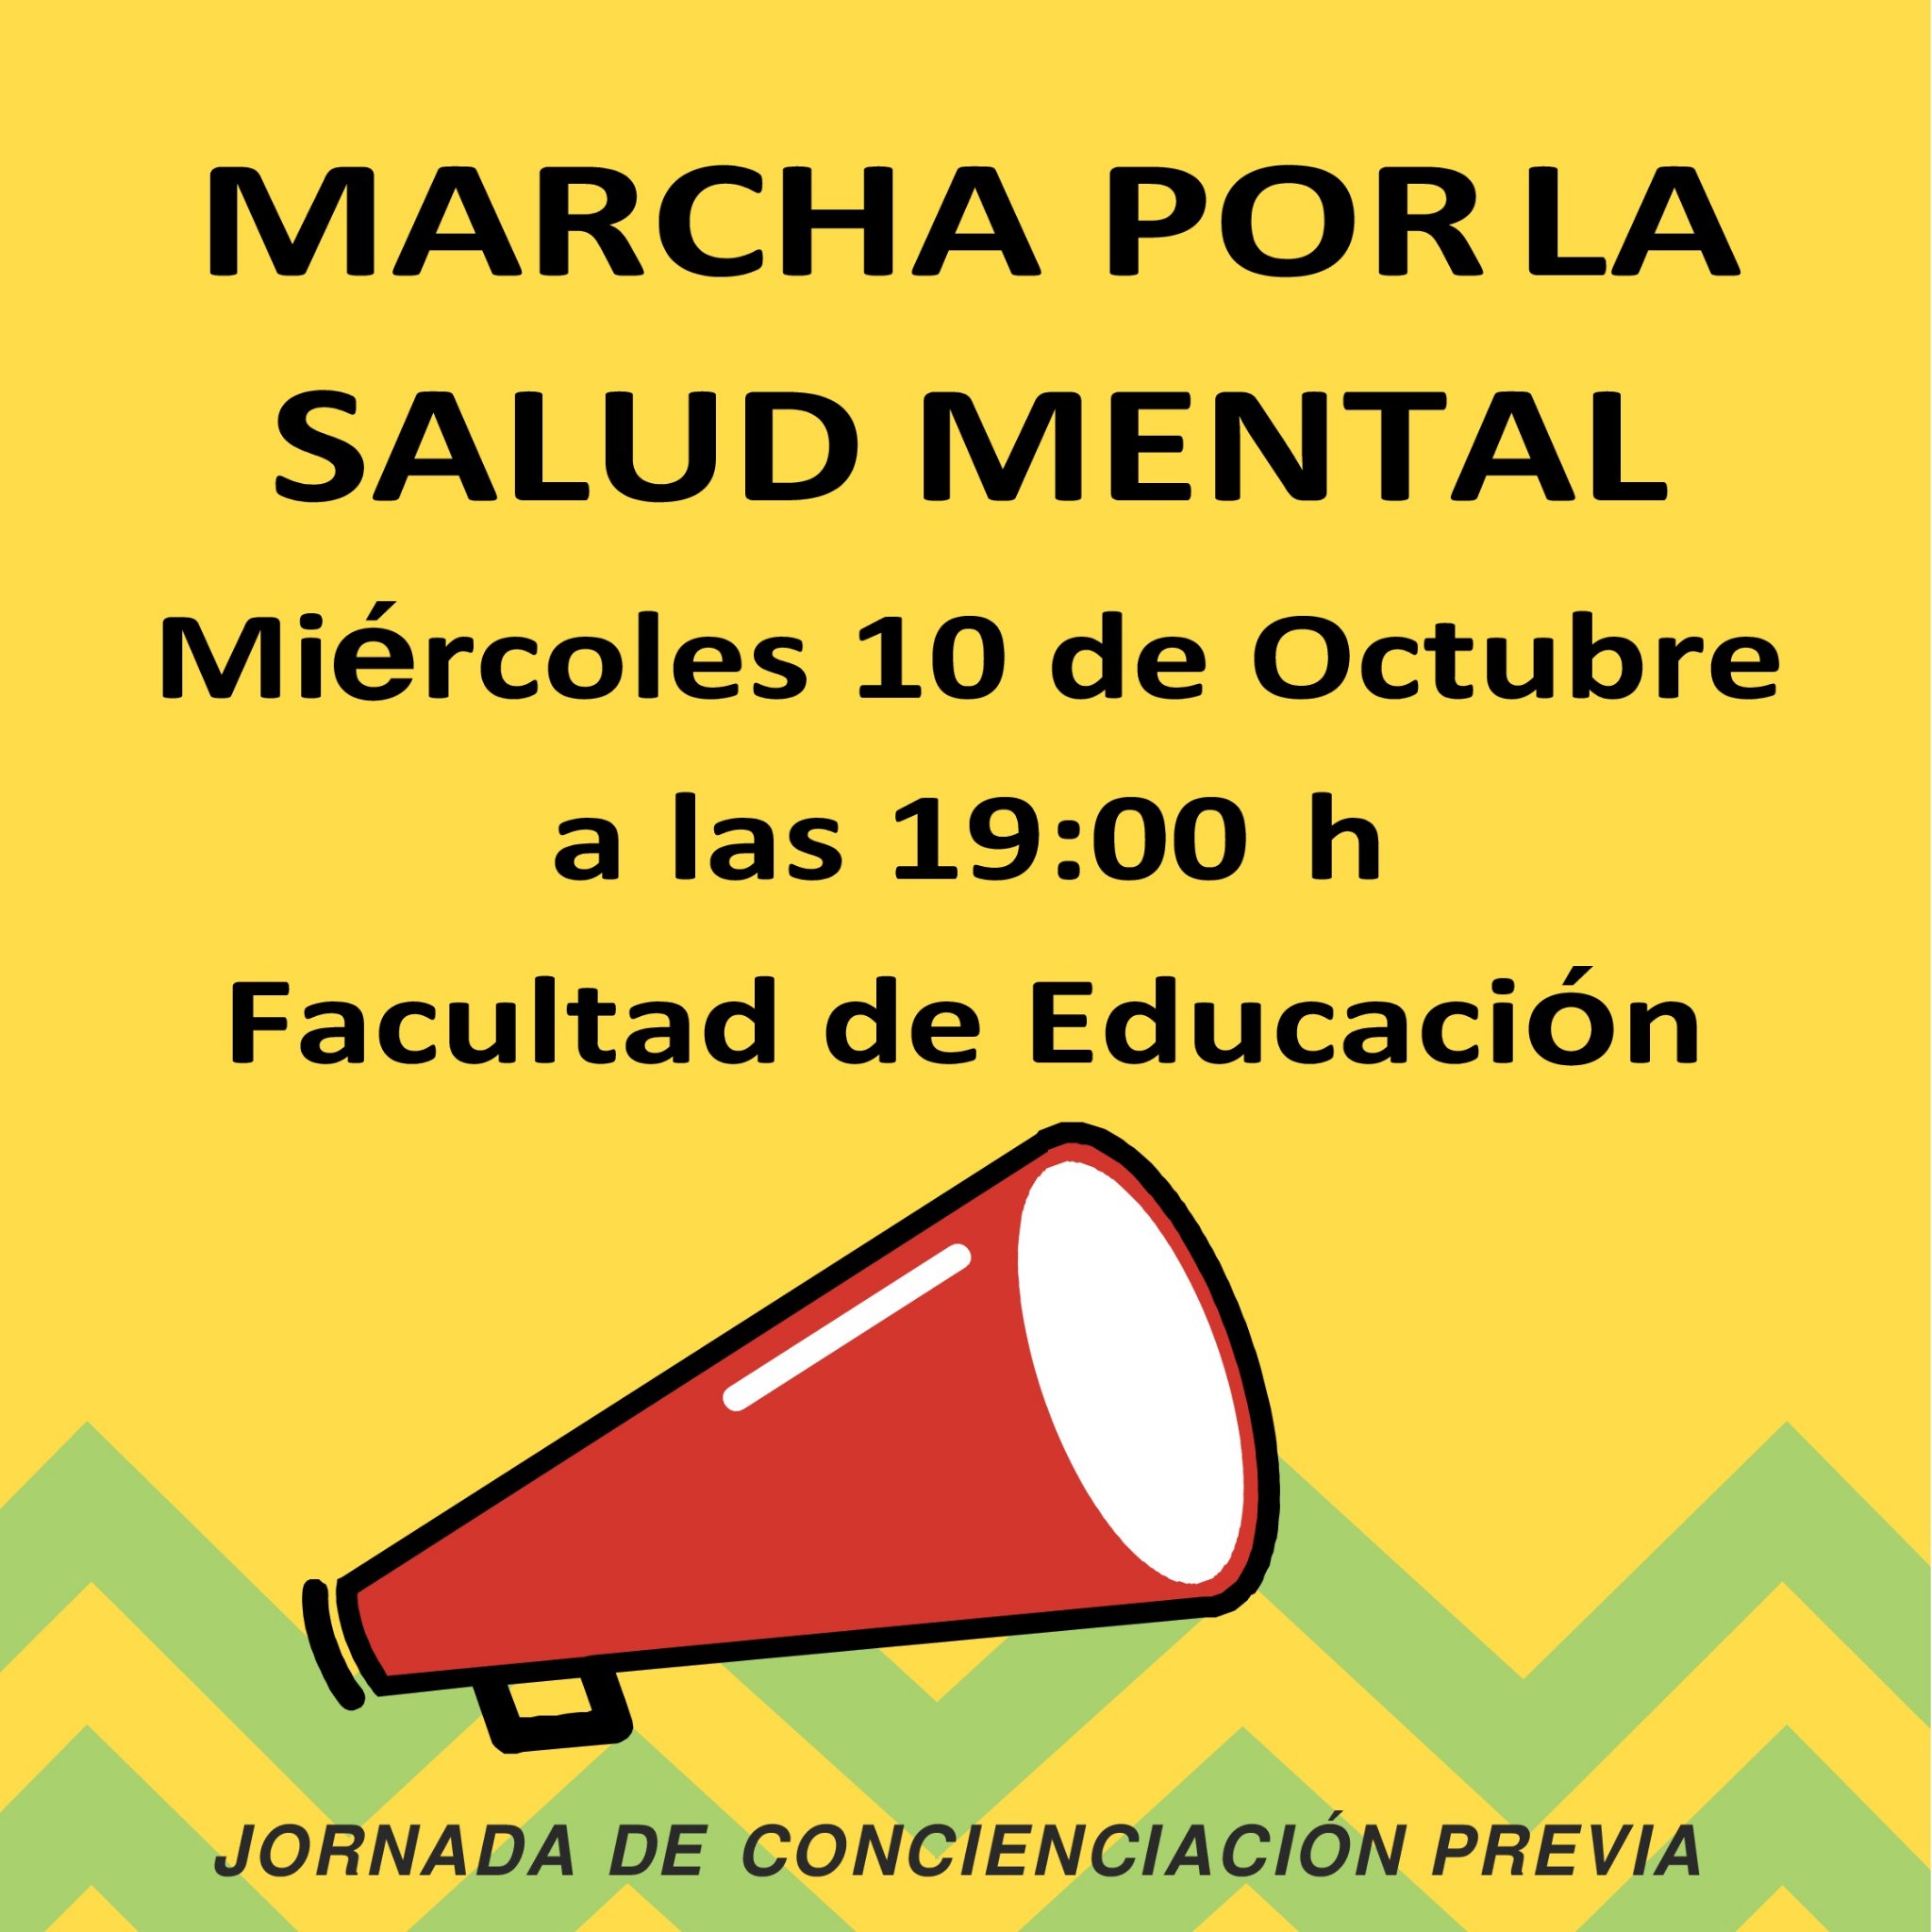 Colectivo de estudiantes de psicología de Badajoz, cuyo objetivo es fomentar el pensamiento crítico y multidisciplinar.